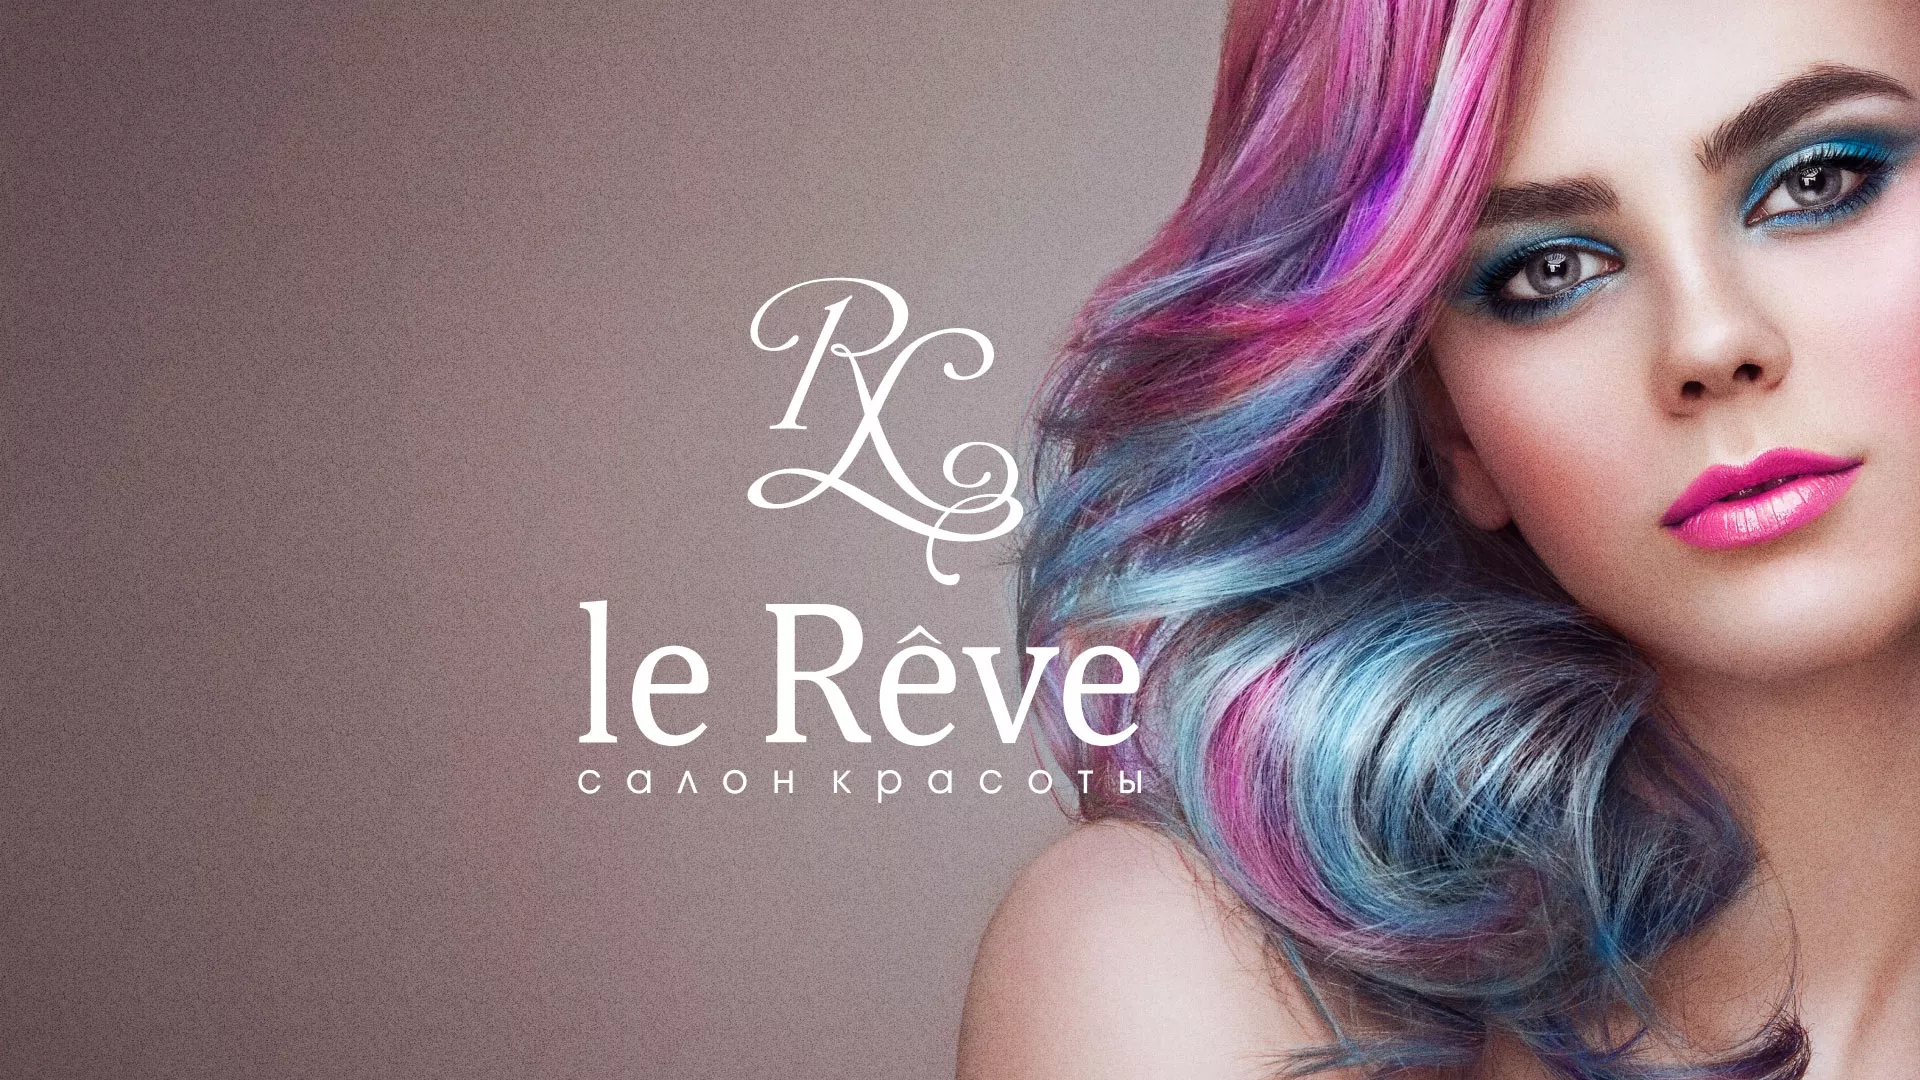 Создание сайта для салона красоты «Le Reve» в Краснокаменске